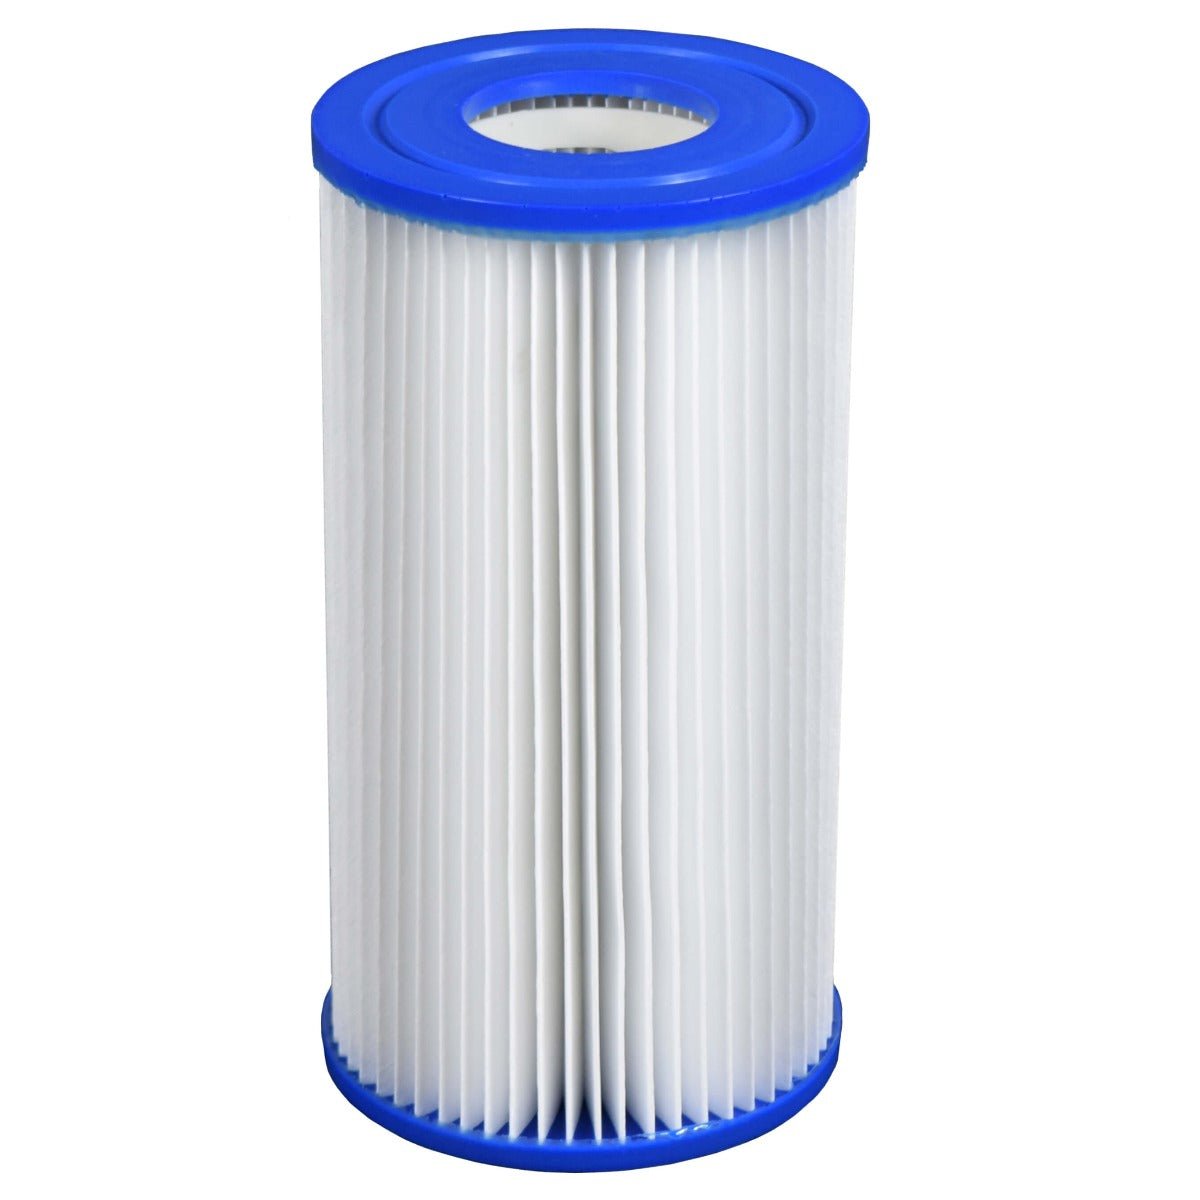 Comfortpool filtercartridge a - Vervanger voor intex type a filter - Bivakshop